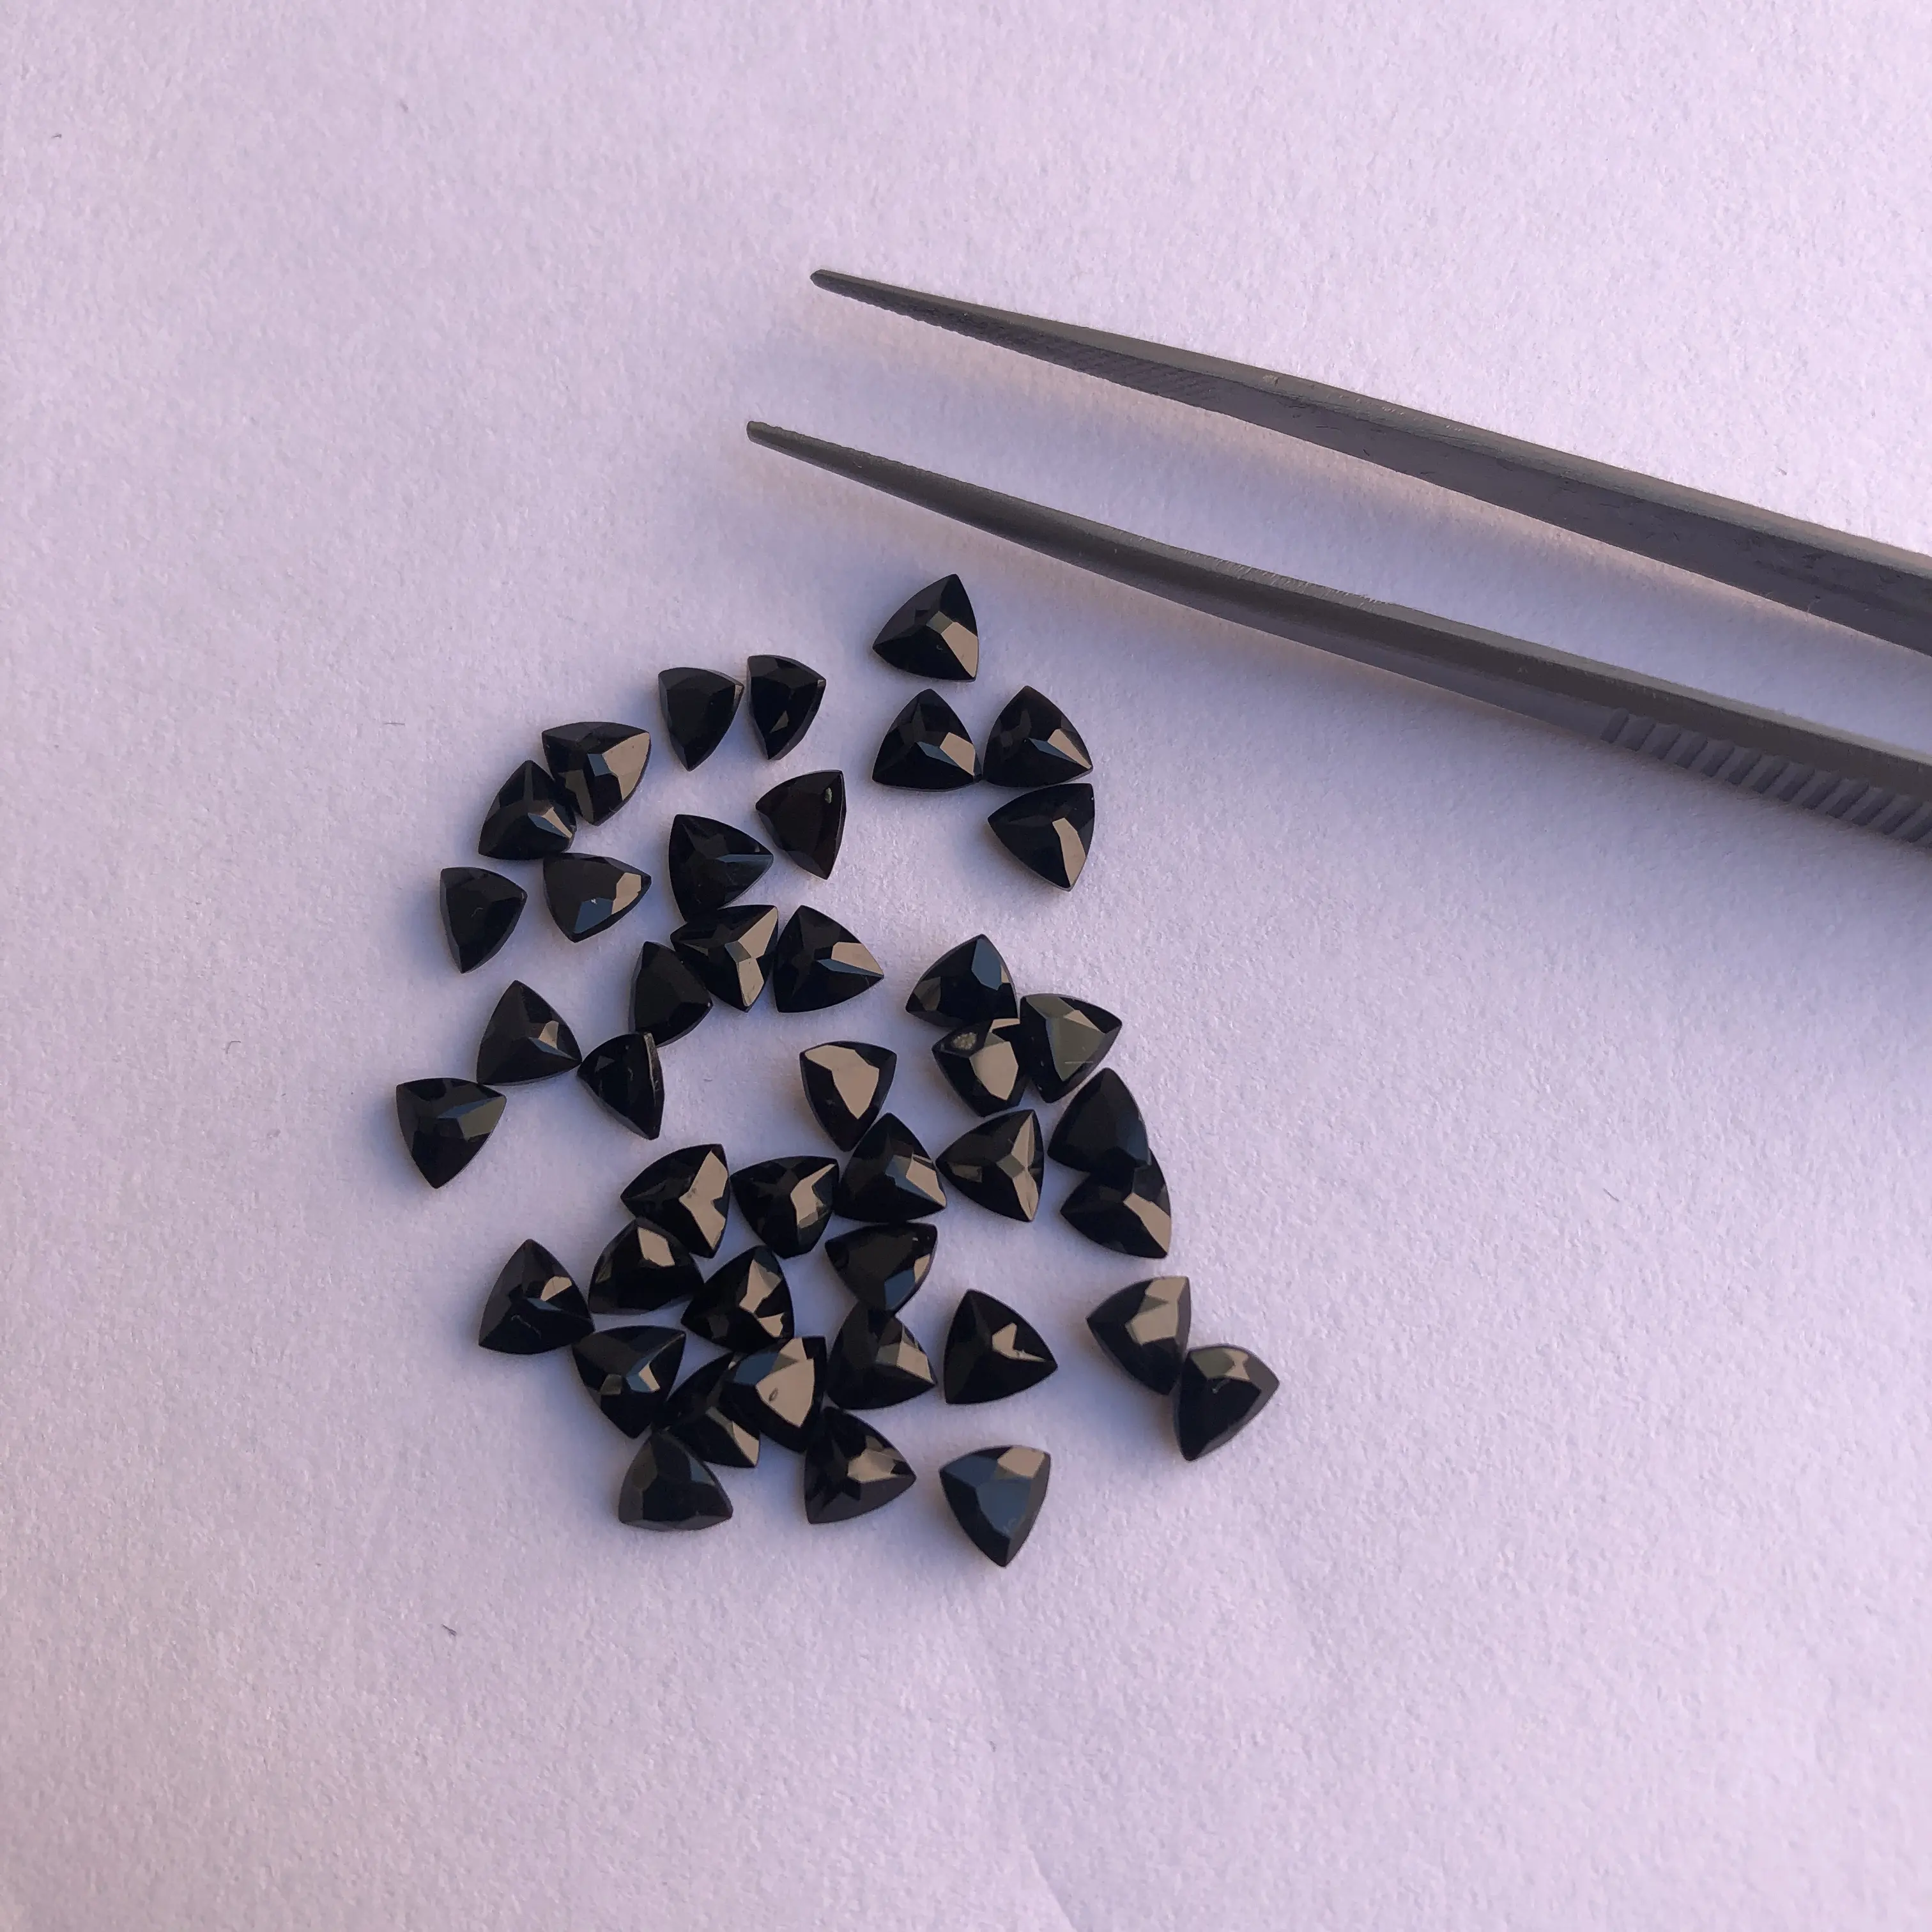 5mm Natural Preto Onyx Trilhão Facetado Corte Calibrado Pedras Preciosas Preço de Atacado Pedras Soltas para Jóias Ajuste Venda Regular